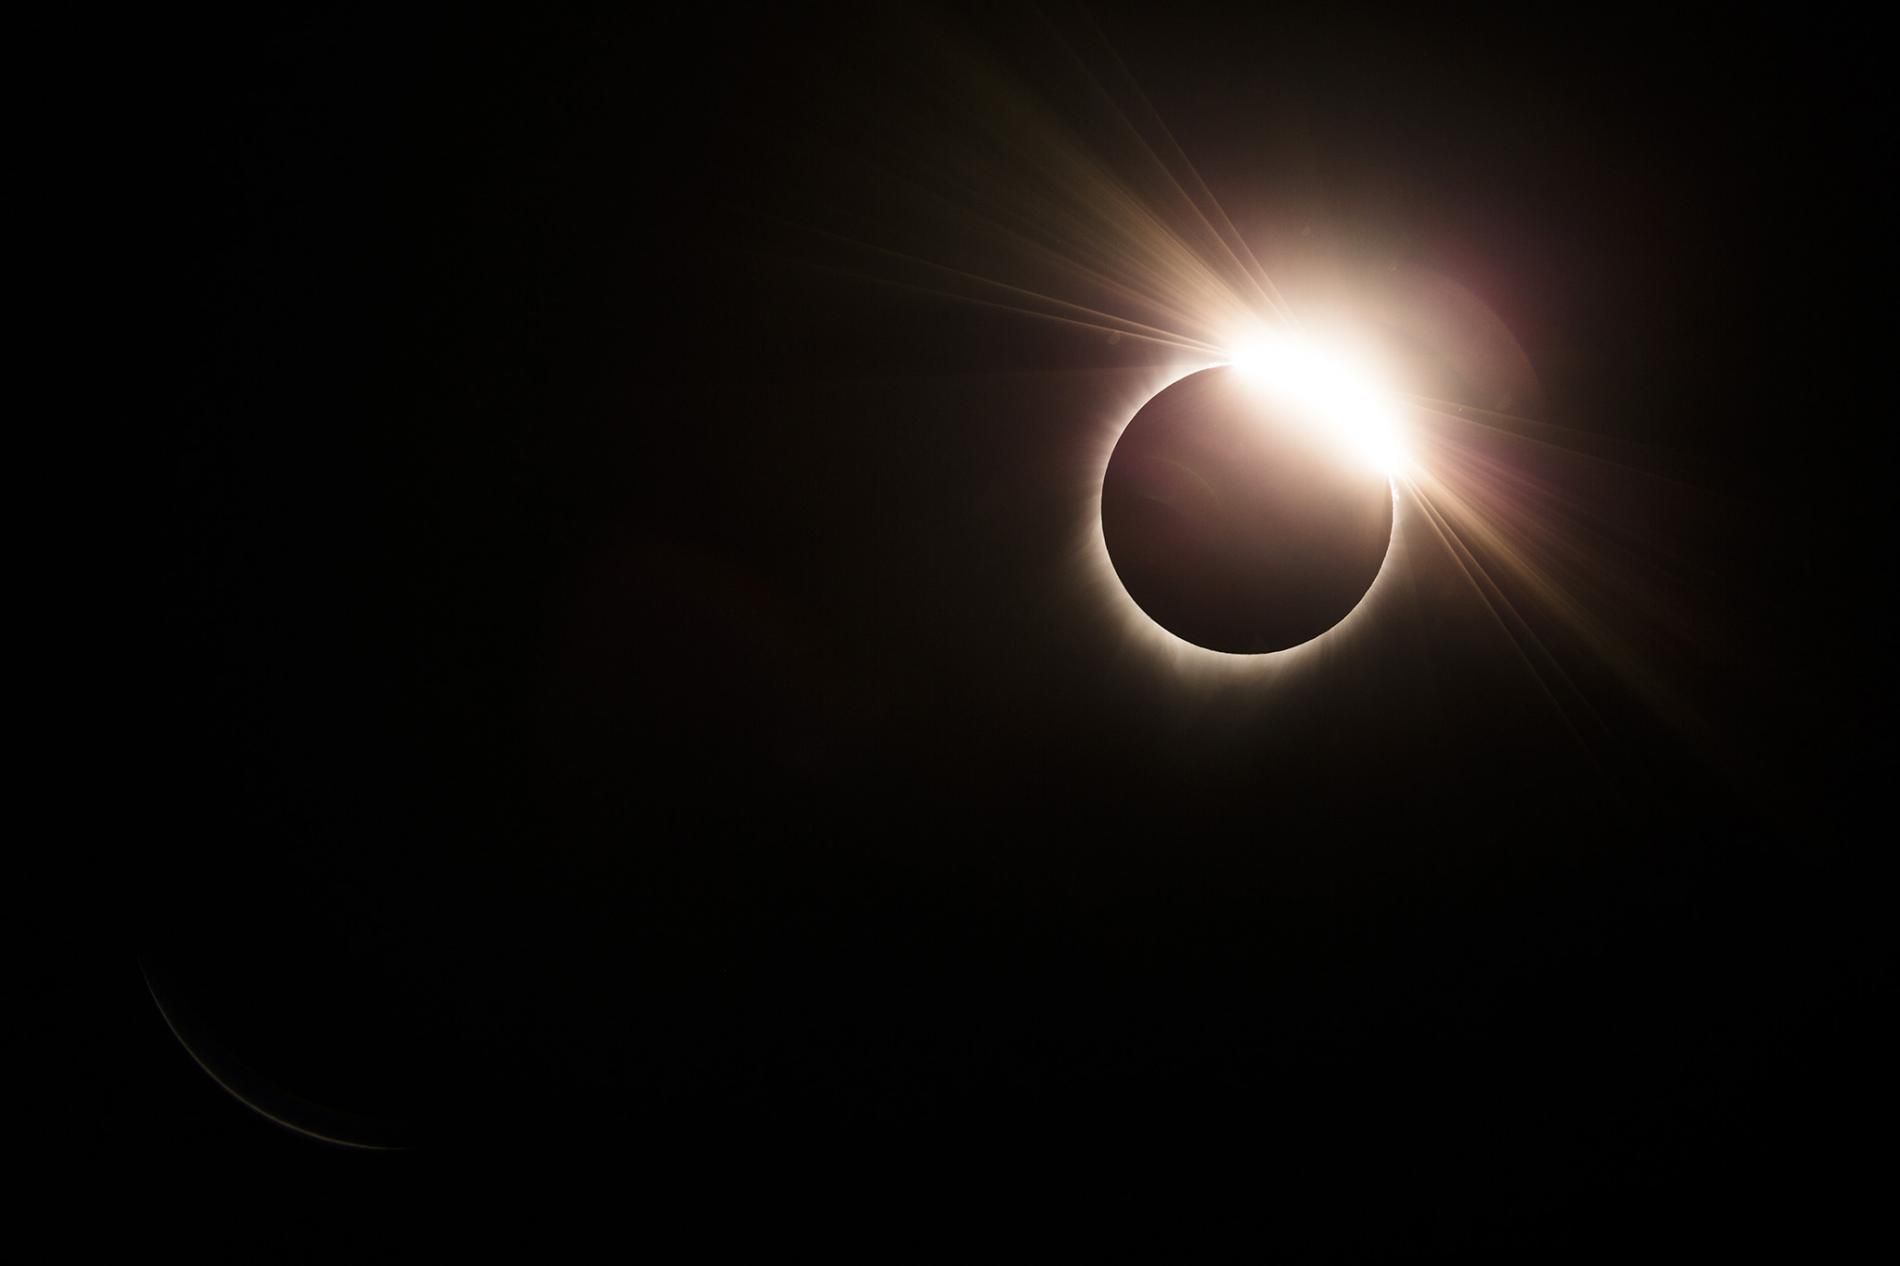 El eclipse solar total en EEUU ocurrió el 21 de agosto de 2017 (National Geographic/JIMMY CHIN)